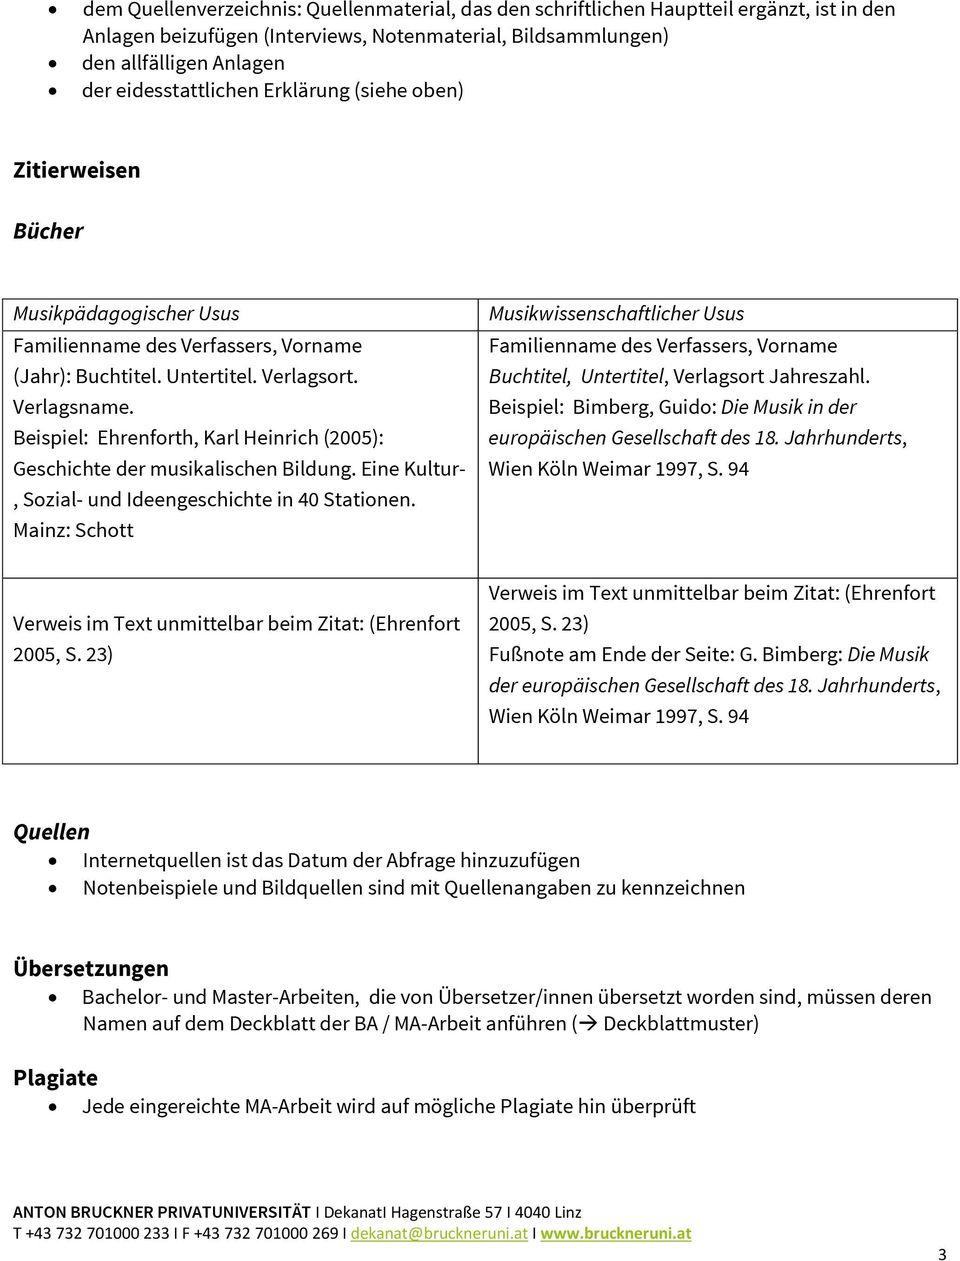 Beispiel: Ehrenforth, Karl Heinrich (2005): Geschichte der musikalischen Bildung. Eine Kultur-, Sozial- und Ideengeschichte in 40 Stationen.